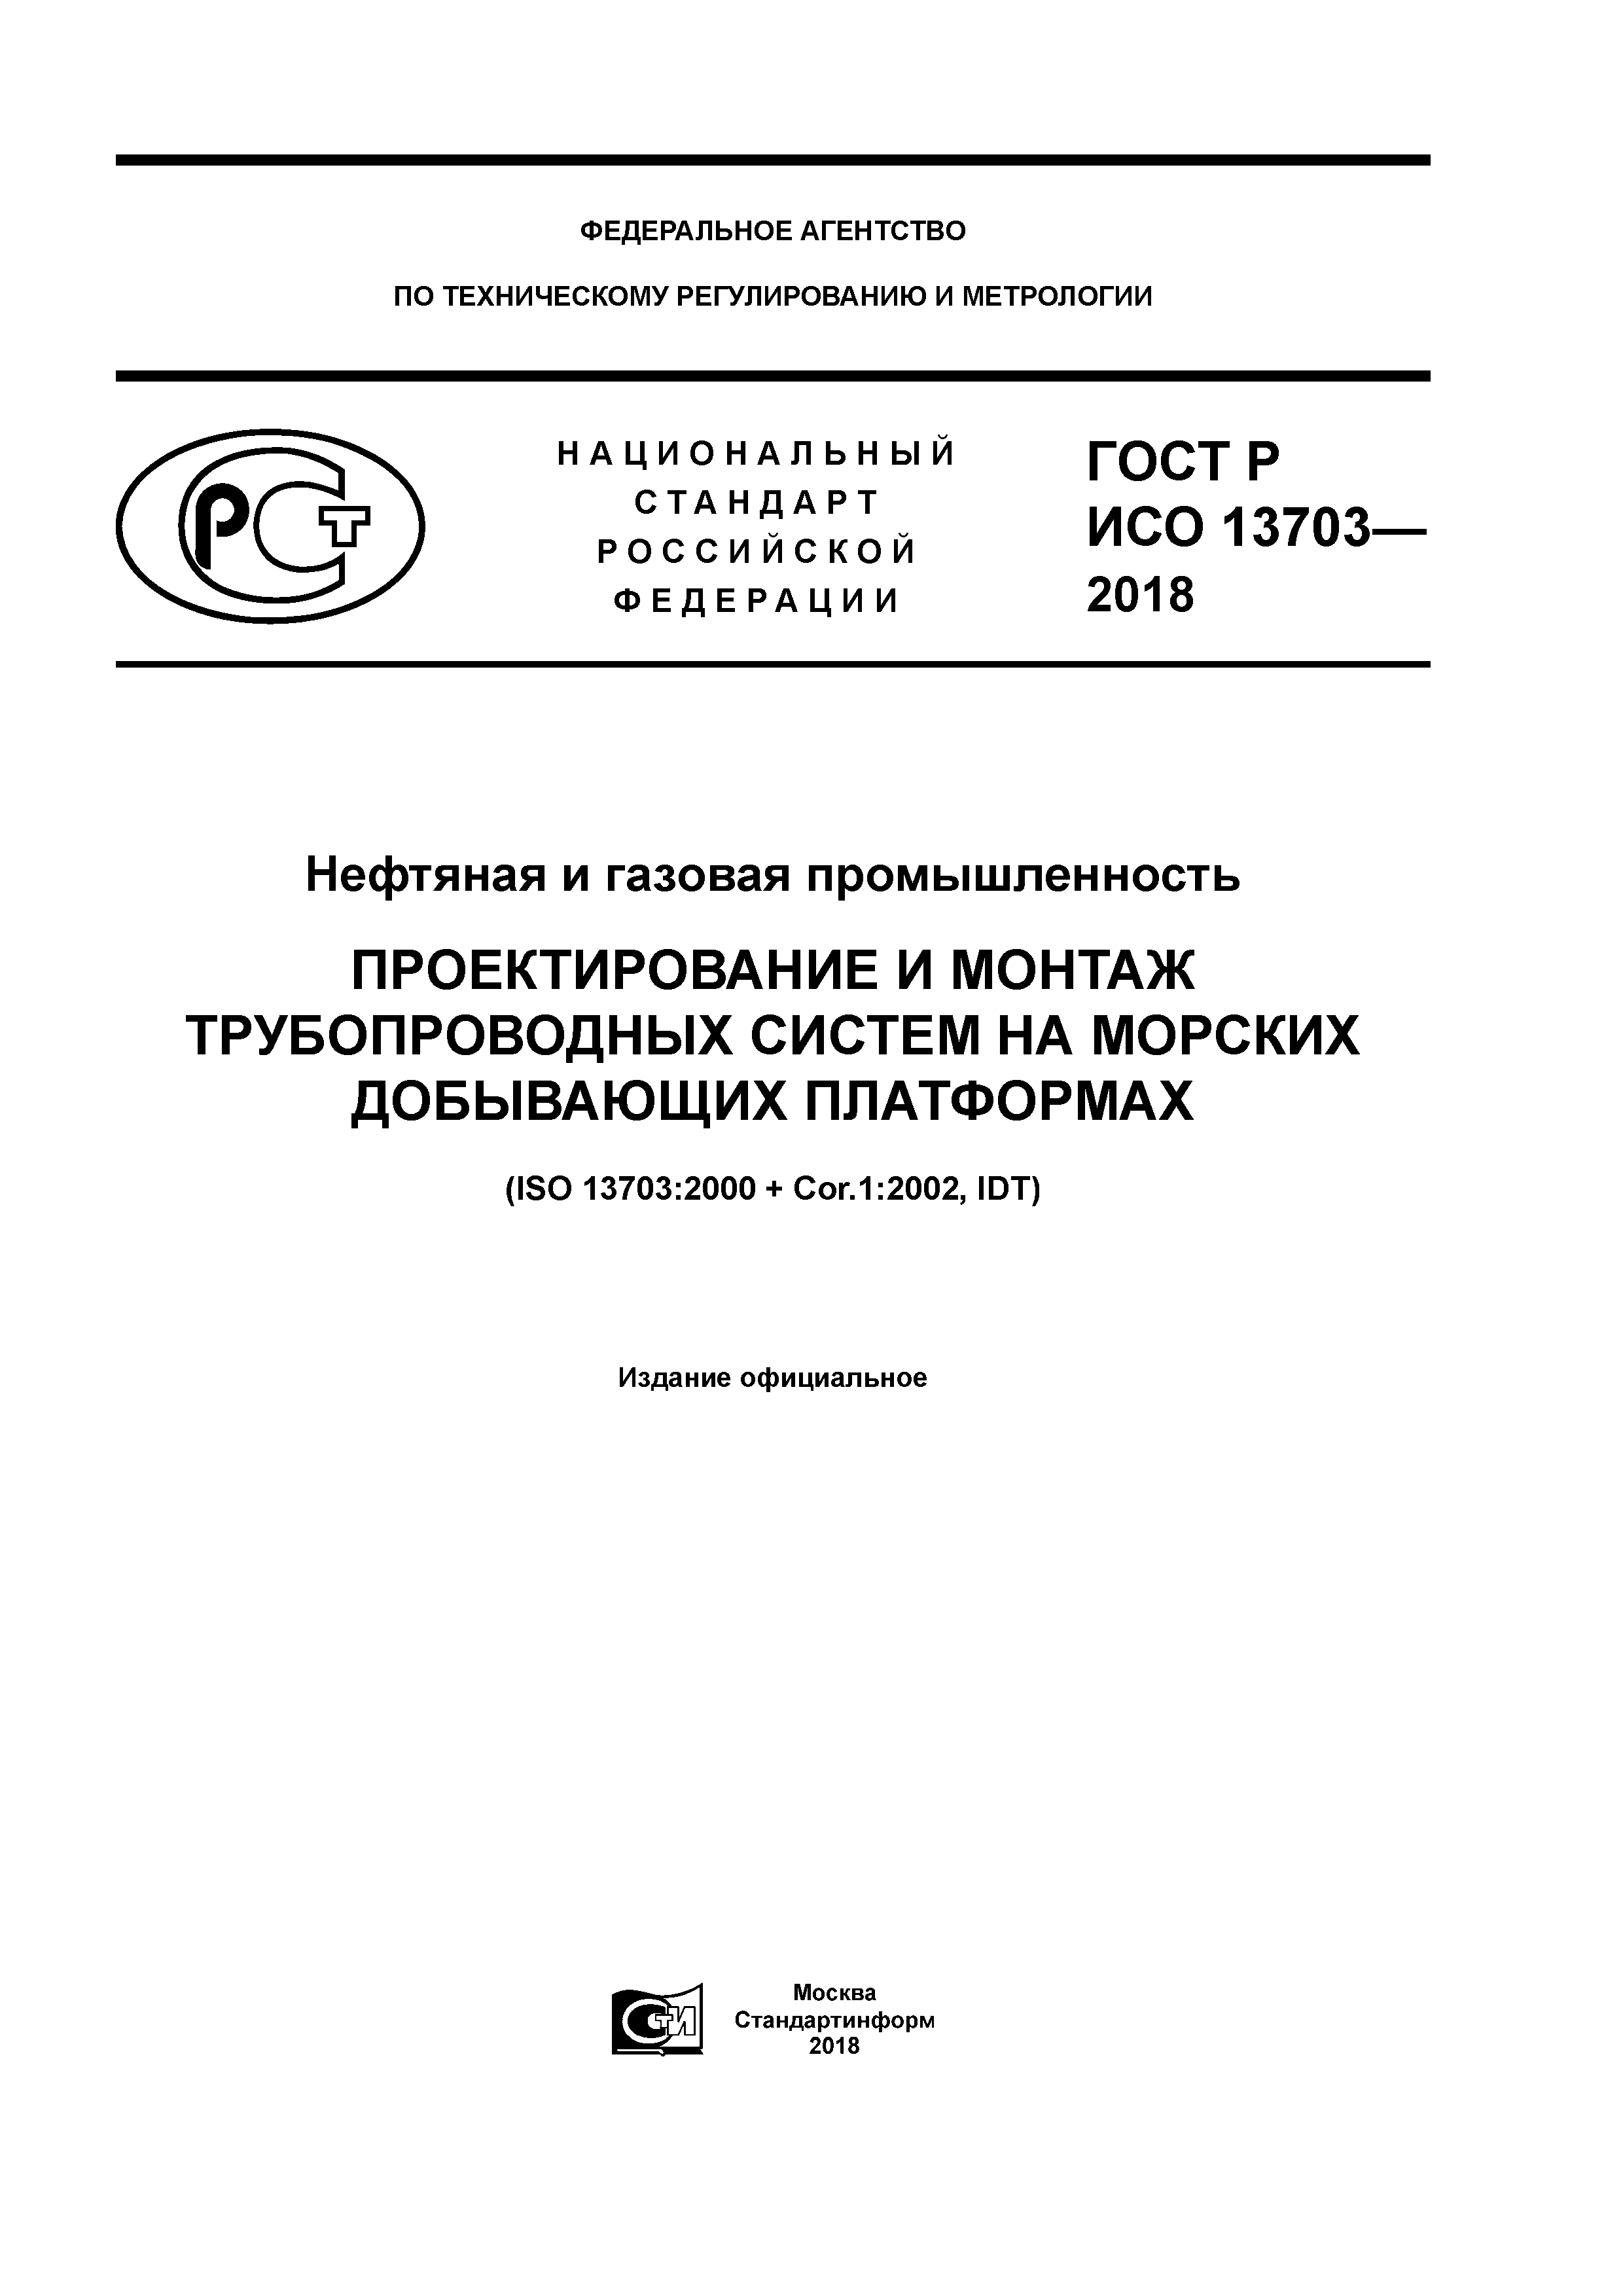 ГОСТ Р ИСО 13703-2018